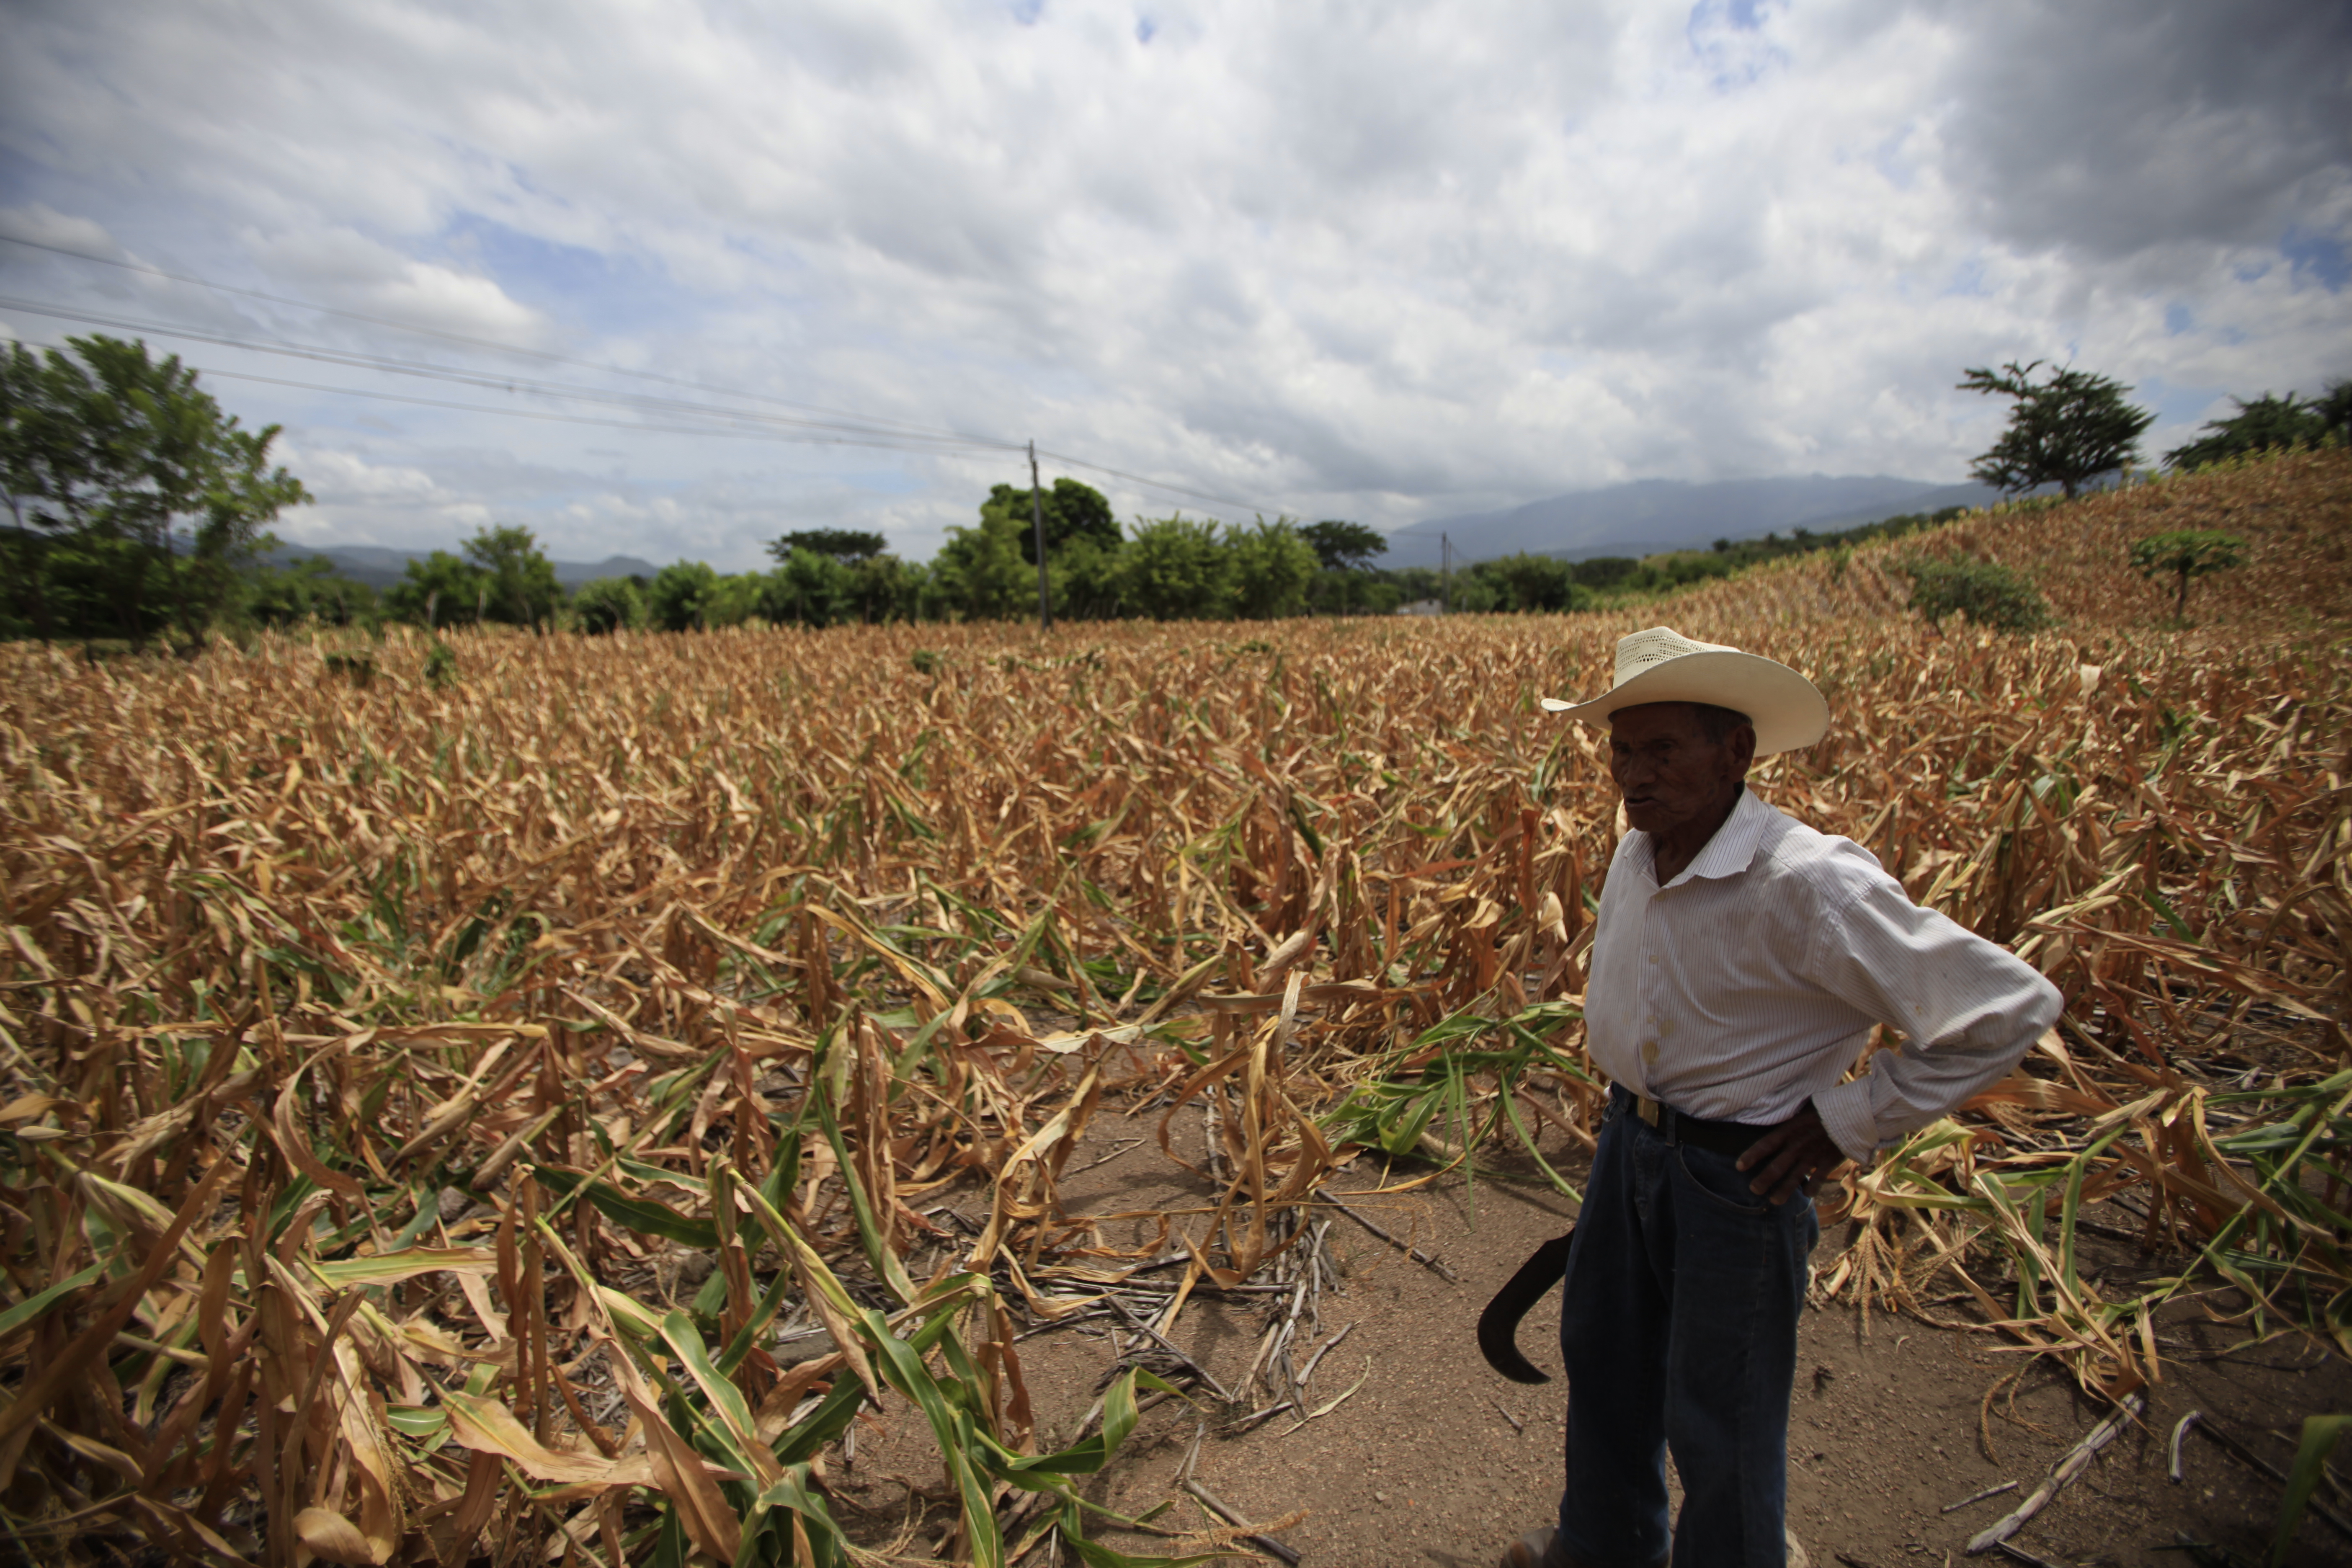 Los agricultores de subsistencia se vieron afectados este año por la sequía. (Foto Prensa Libre: Hemeroteca)